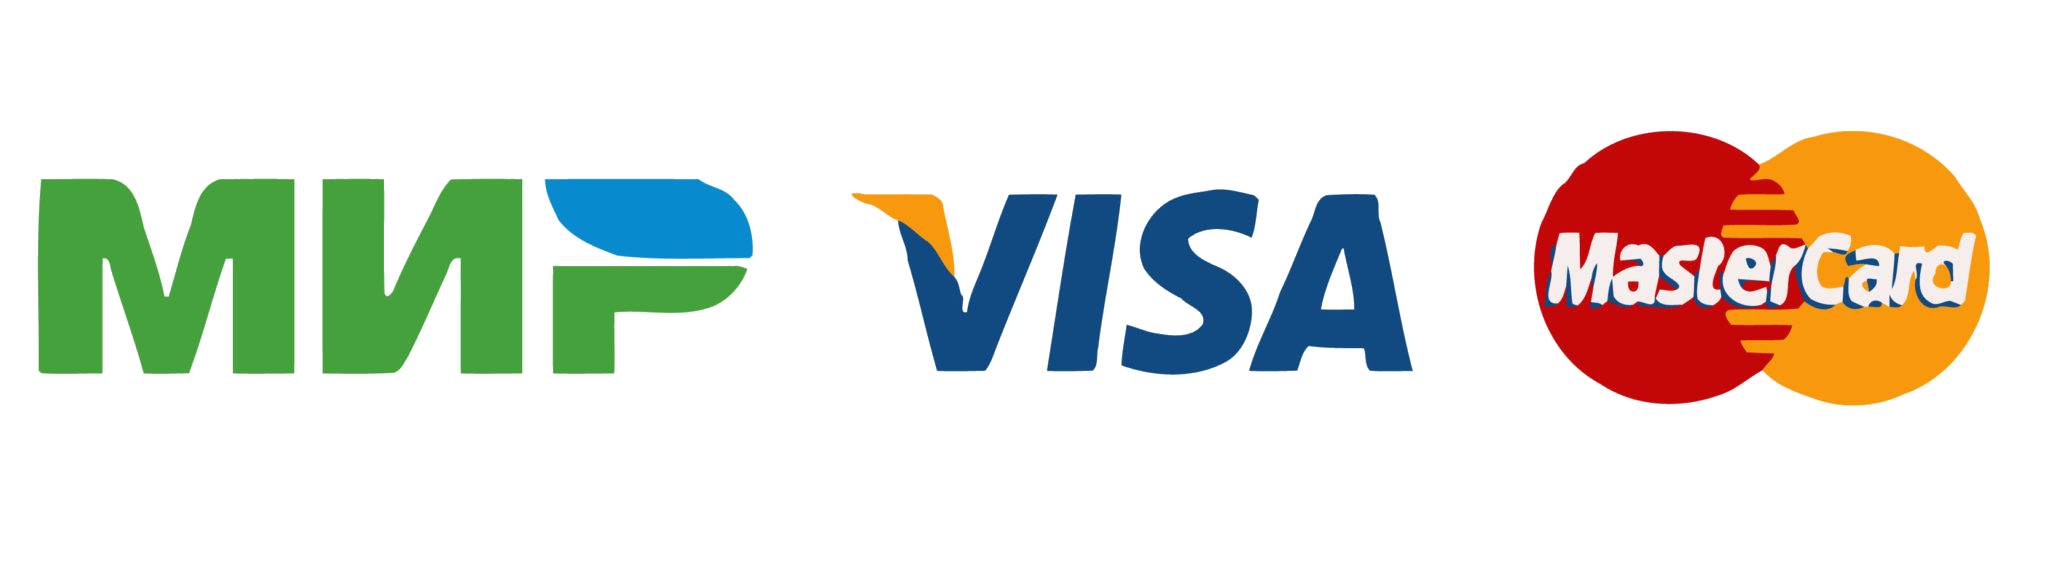 Оплата visa mastercard. Иконки visa MASTERCARD мир. Платежная система мир логотип. Виза Мастеркард мир. Логотипы платежных систем.